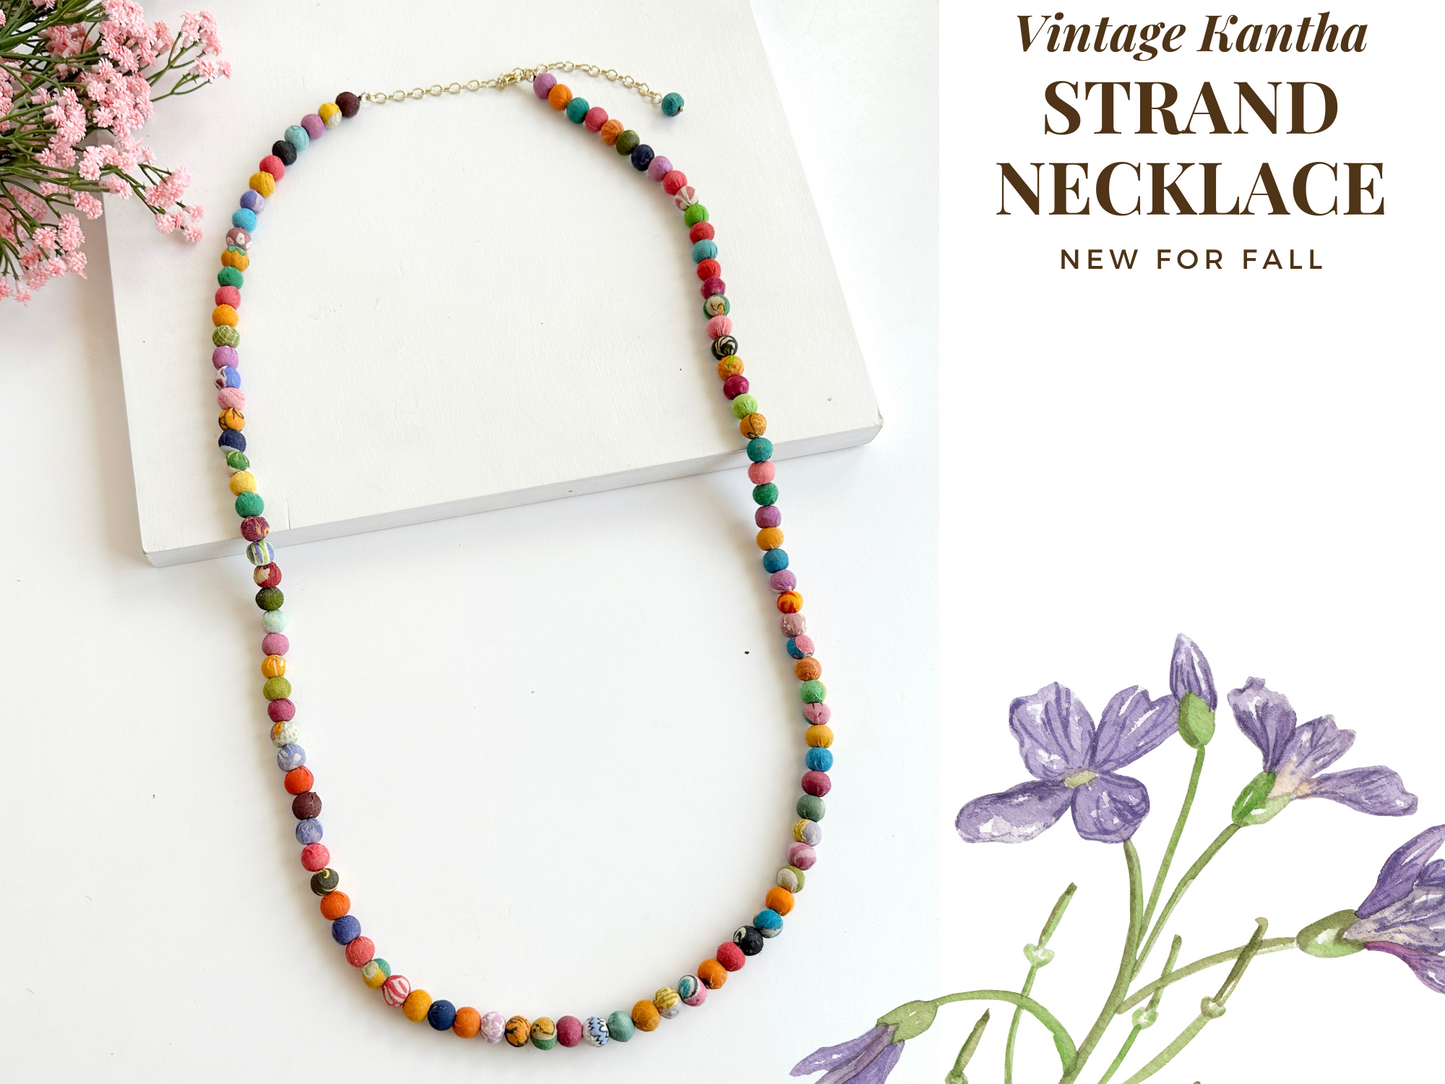 39" Vintage Kantha Strand Necklace